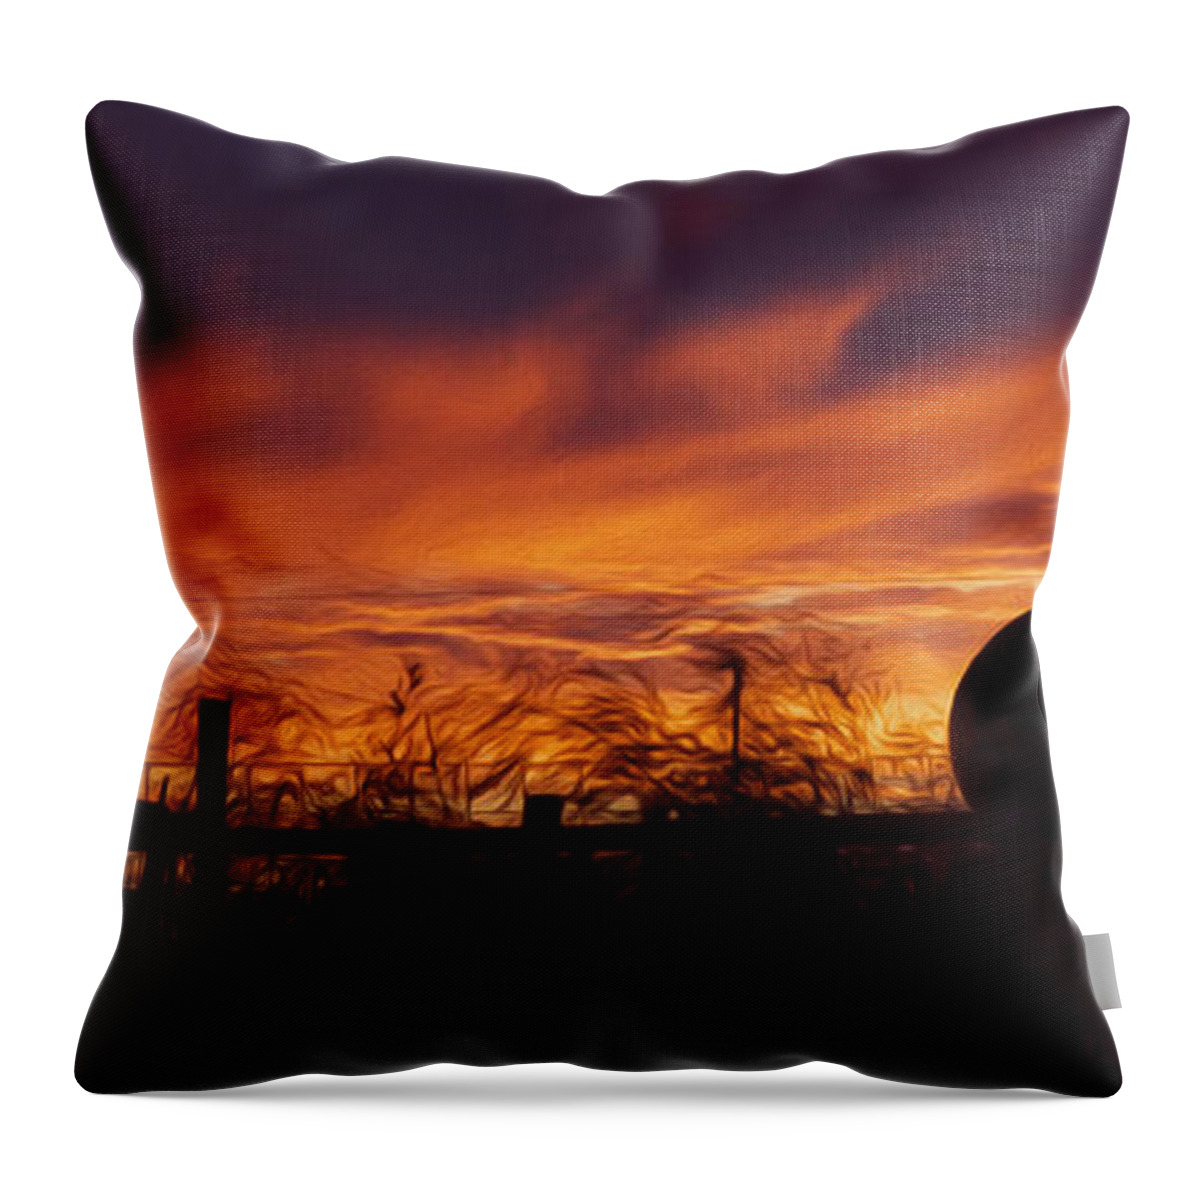 Sunset Throw Pillow featuring the photograph Saskatchewan by Ellery Russell